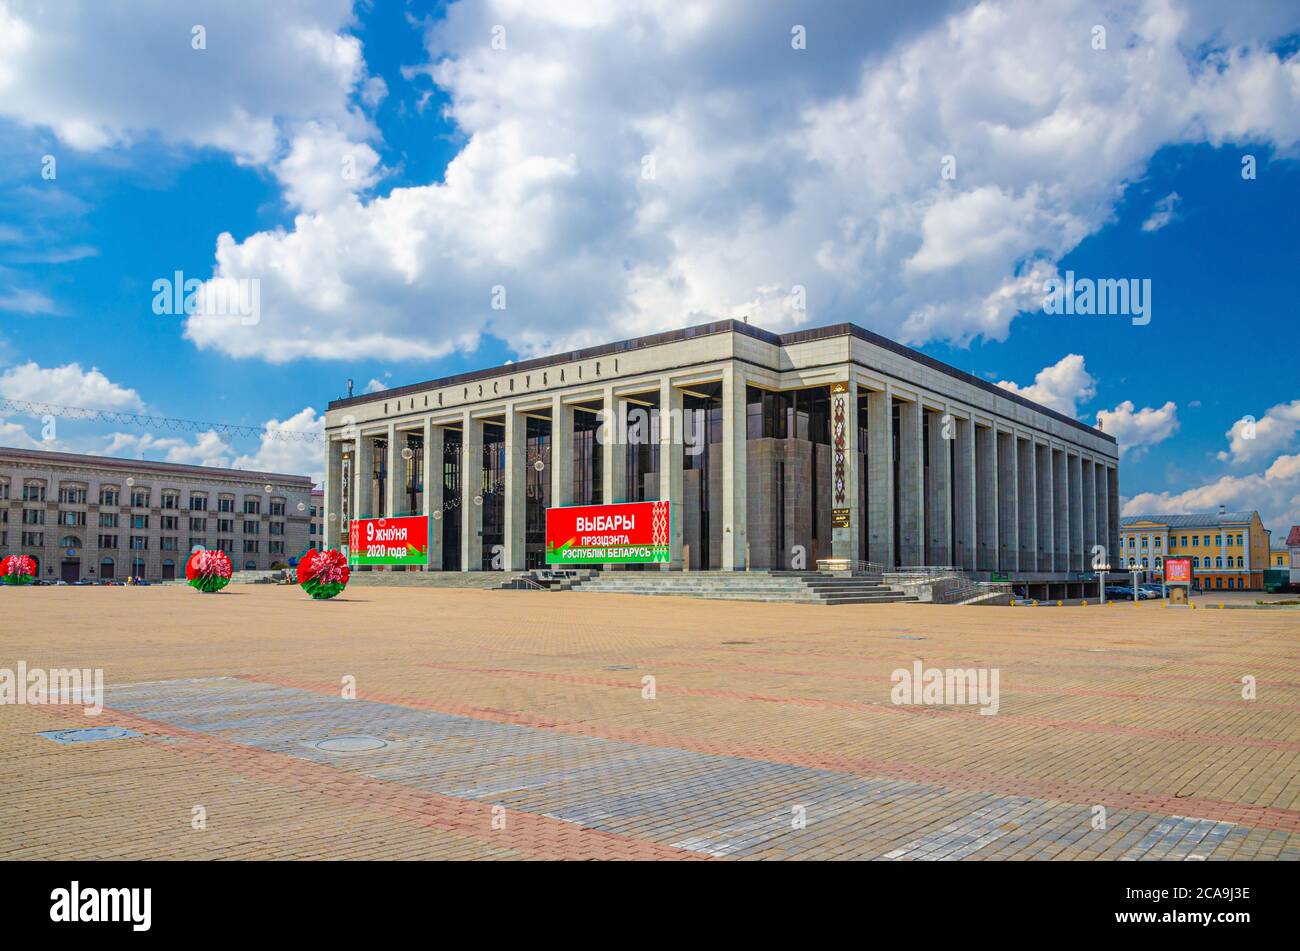 Minsk, Belarus, 26. Juli 2020: Palast der Republik palastartiges Regierungsgebäude mit Präsidentschaftswahlen Werbeplakat auf Oktoberplatz und Independence Avenue, blauer Himmel Stockfoto